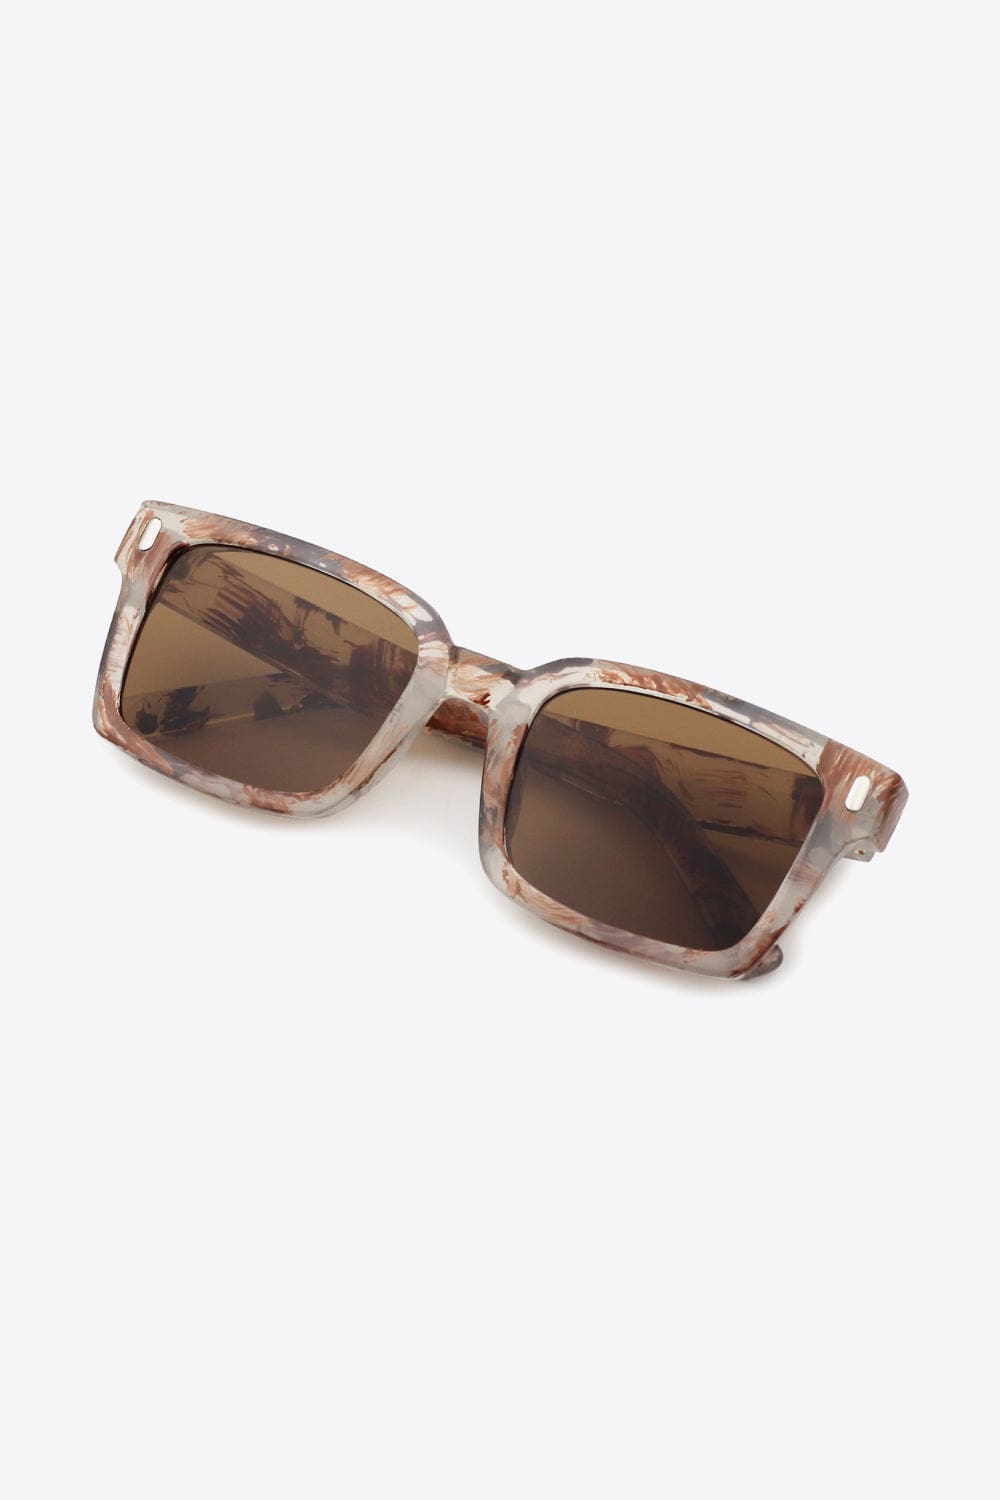 UV400 Polycarbonate Square Sunglasses - Body By J'ne